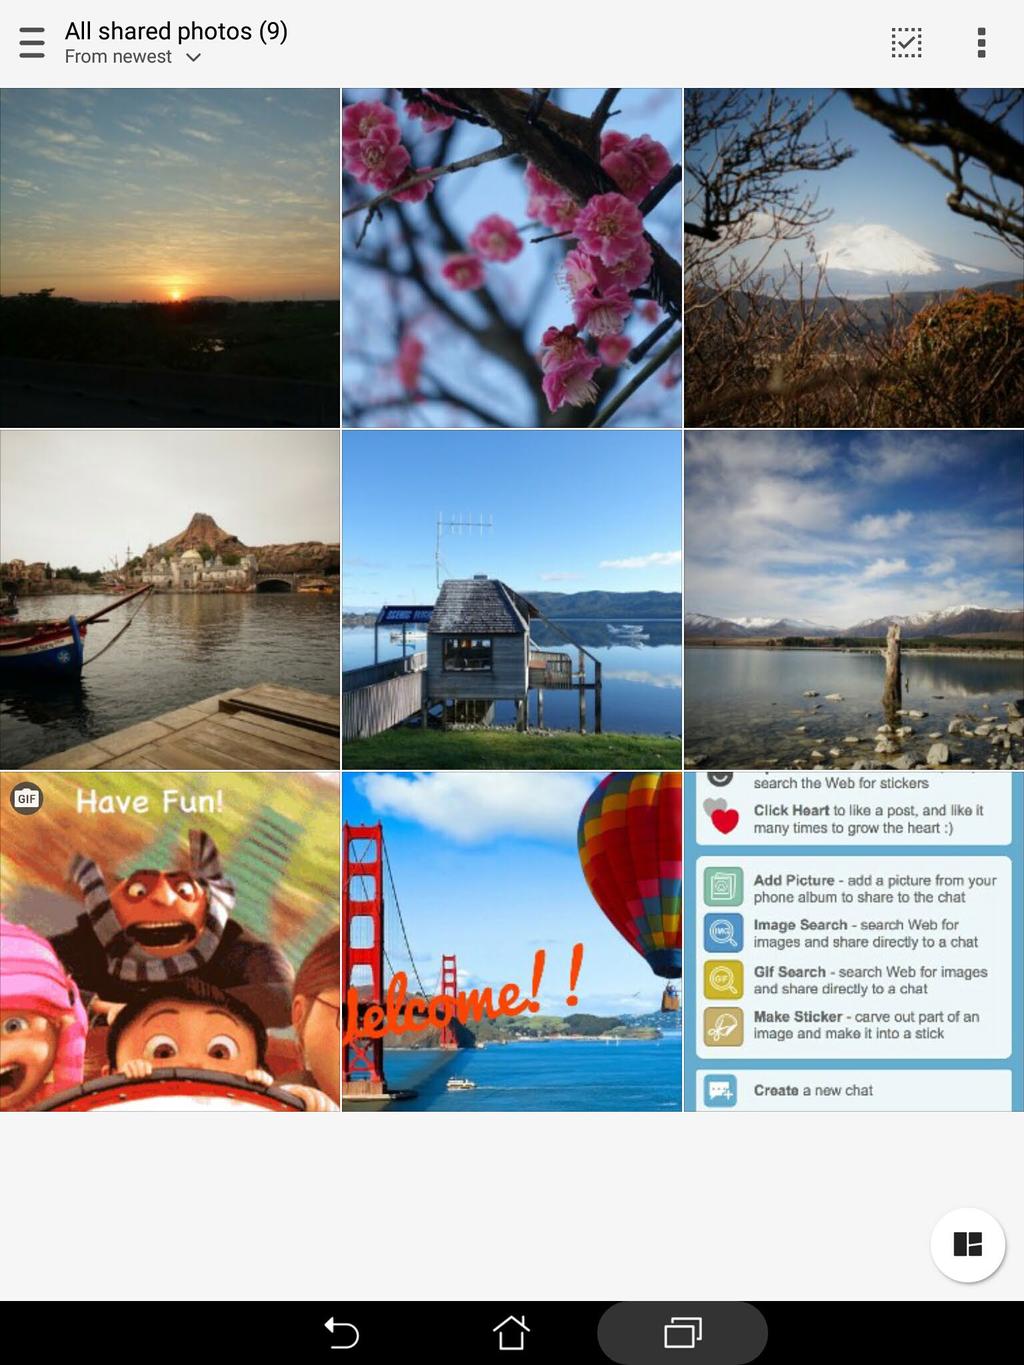 Προβολή όλων των κοινόχρηστων φωτογραφιών Πατήστε στο All shared photos (Όλες οι κοινόχρηστες φωτογραφίες) για να προβληθούν όλες οι φωτογραφίες που μοιραστήκατε εσείς και οι επαφές του Omlet Chat